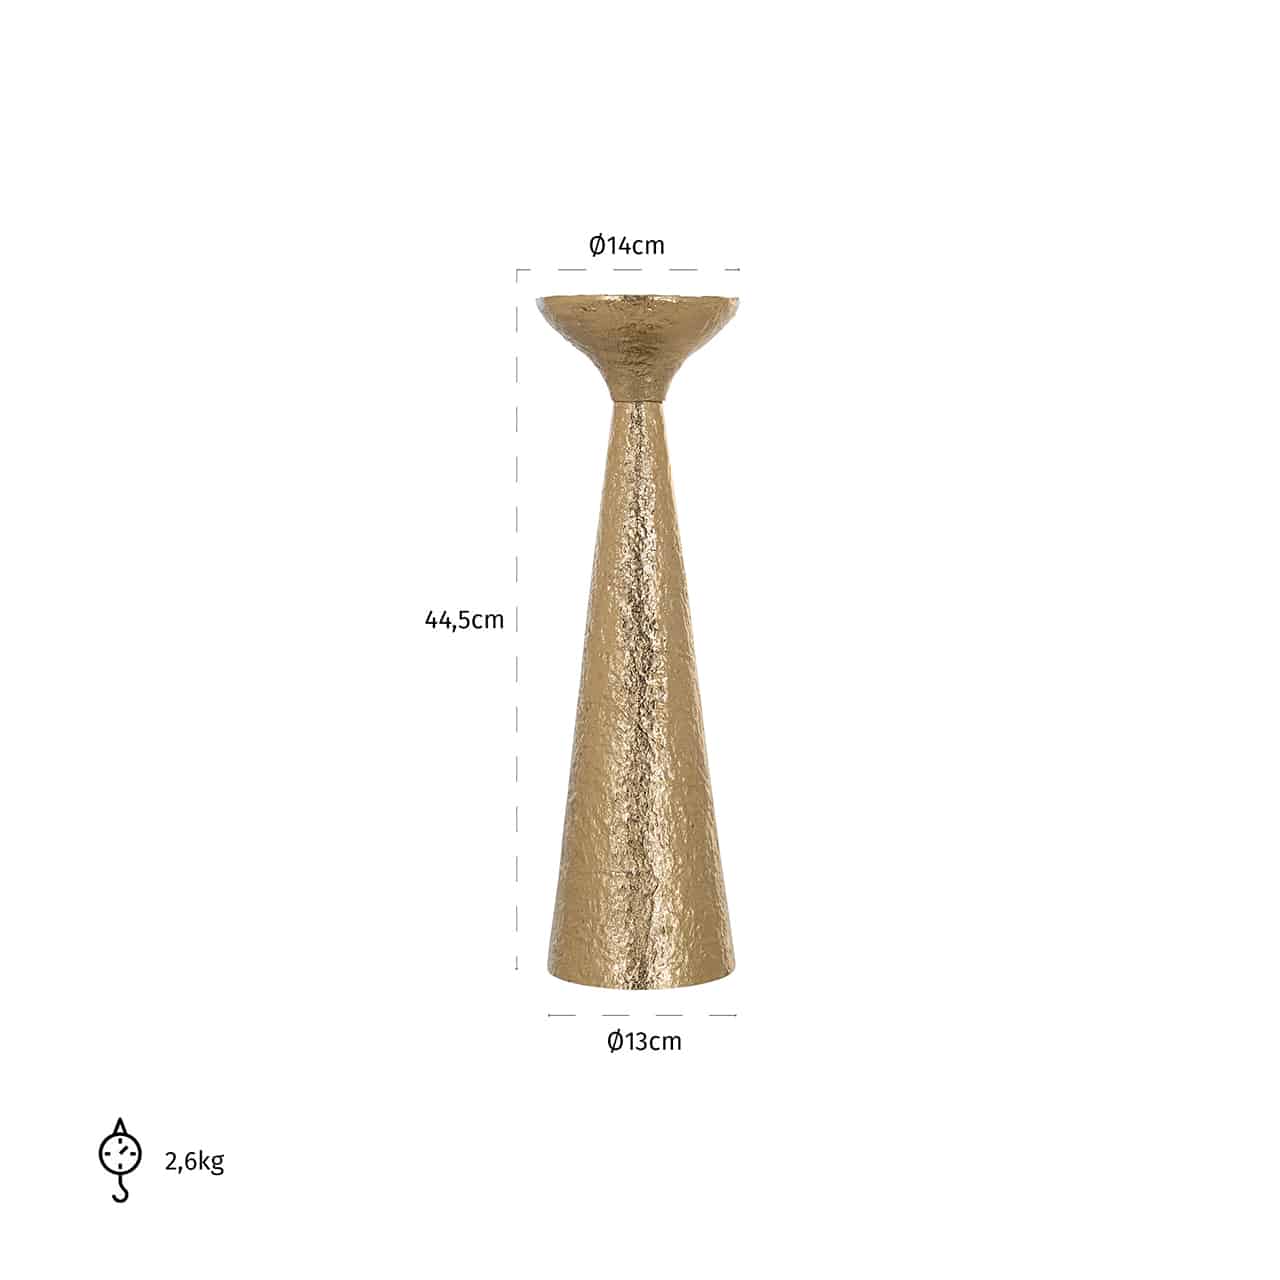 Kerzenhalter Feliz groß von Richmond im Design eines hohen, Kegels aus gehämmertem Gold auf dem ein kurzer trichterförmiger Kerzenteller sitzt.